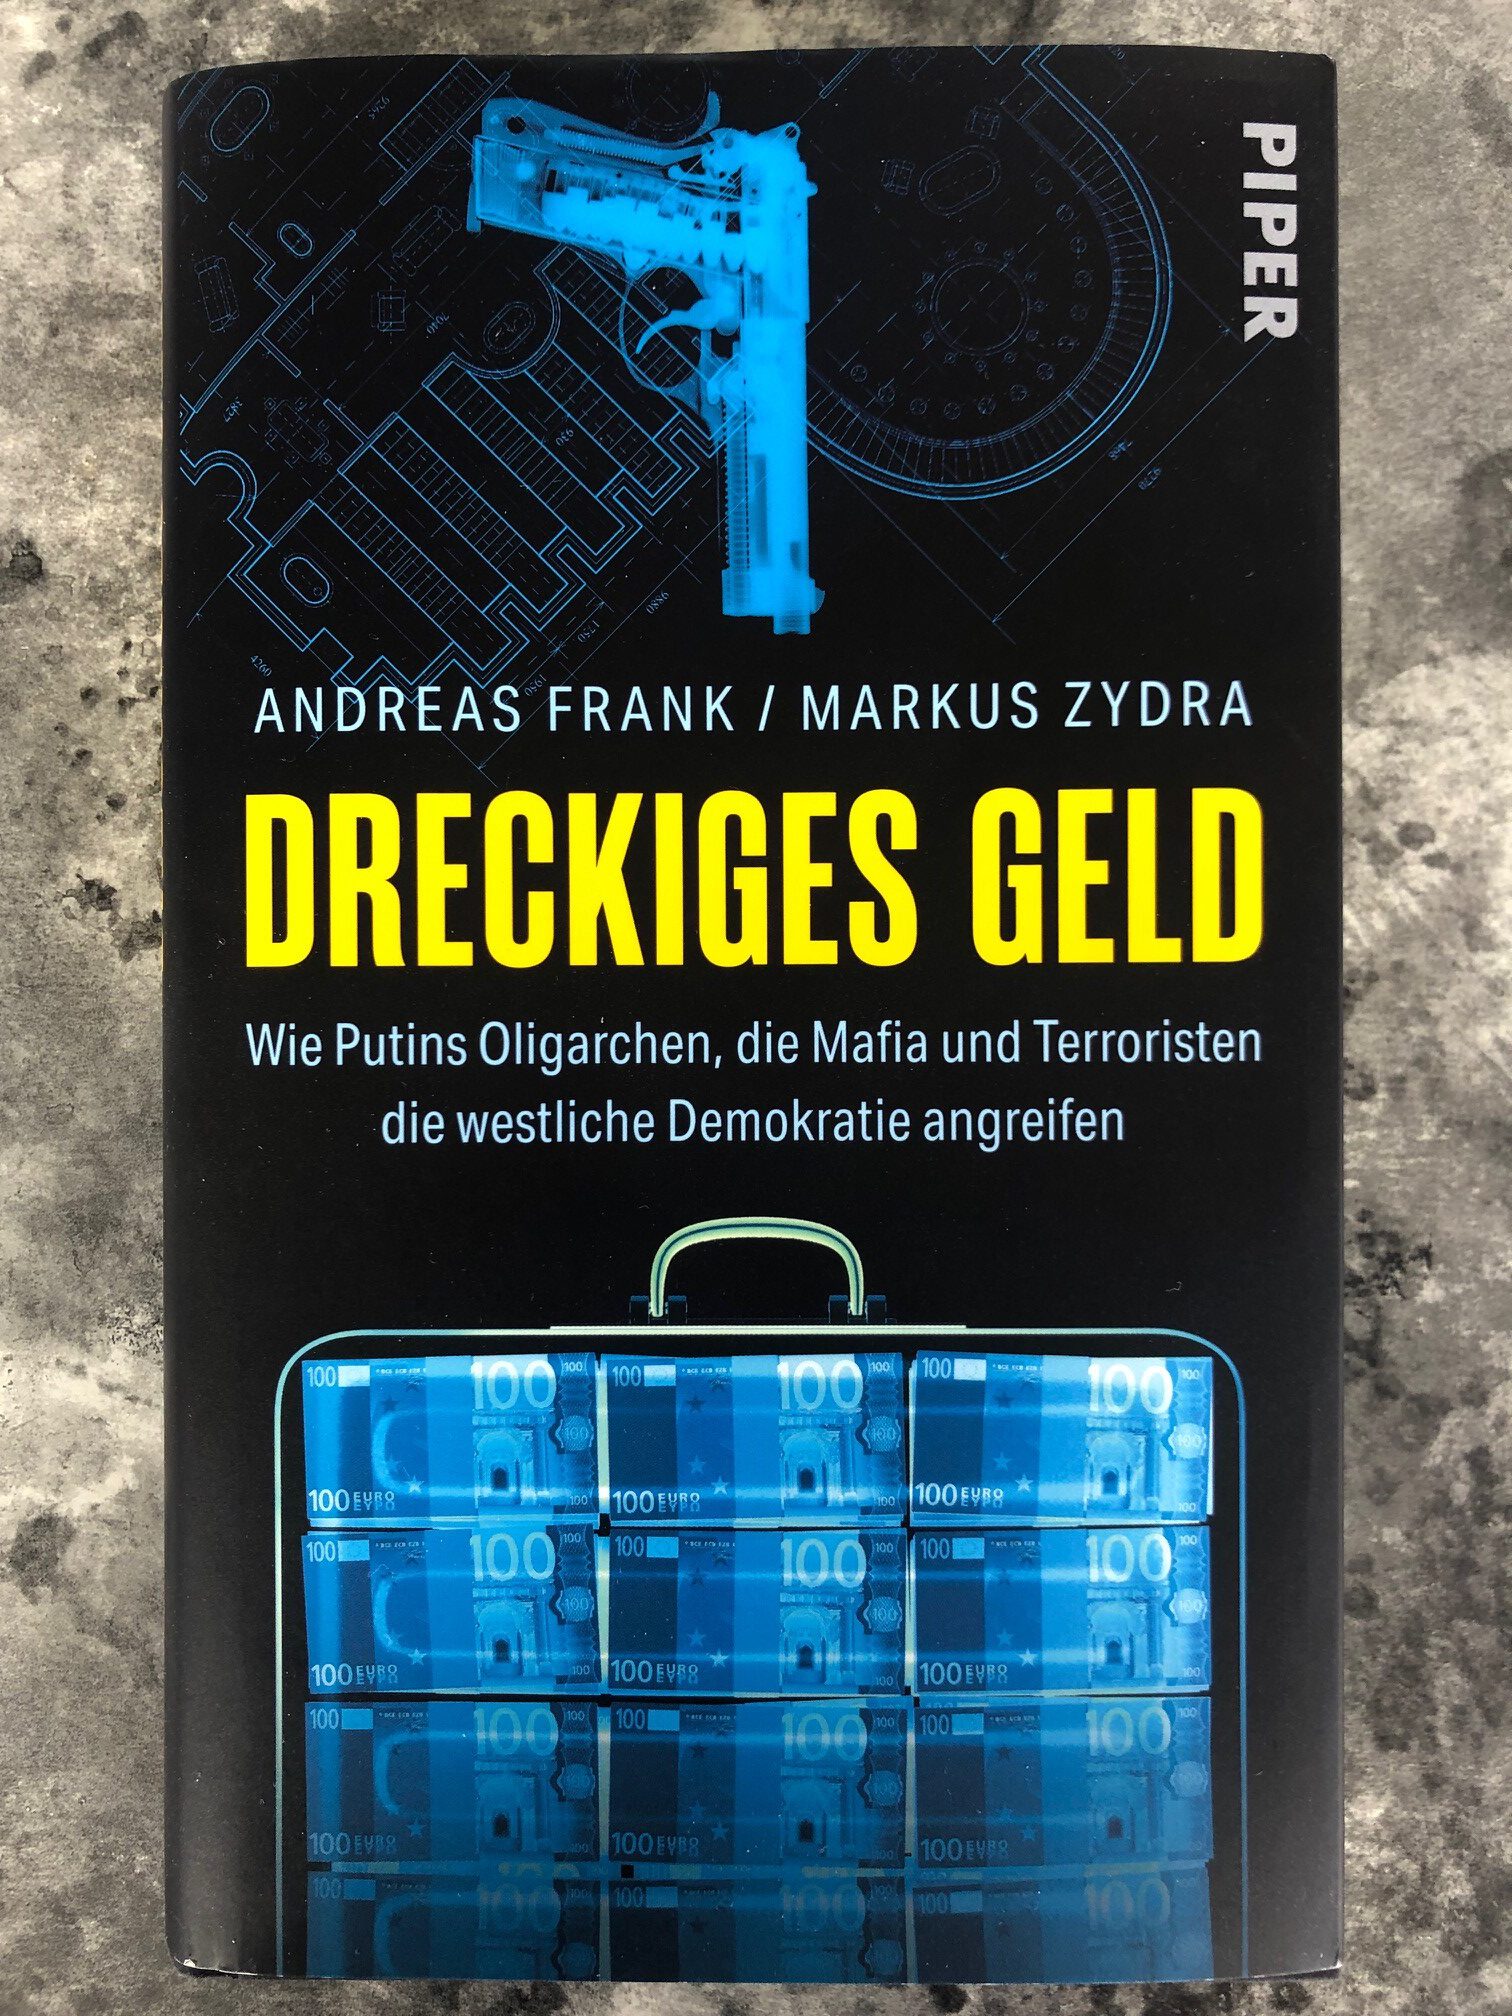 Lesung mit Markus Zydra "Dreckiges Geld"